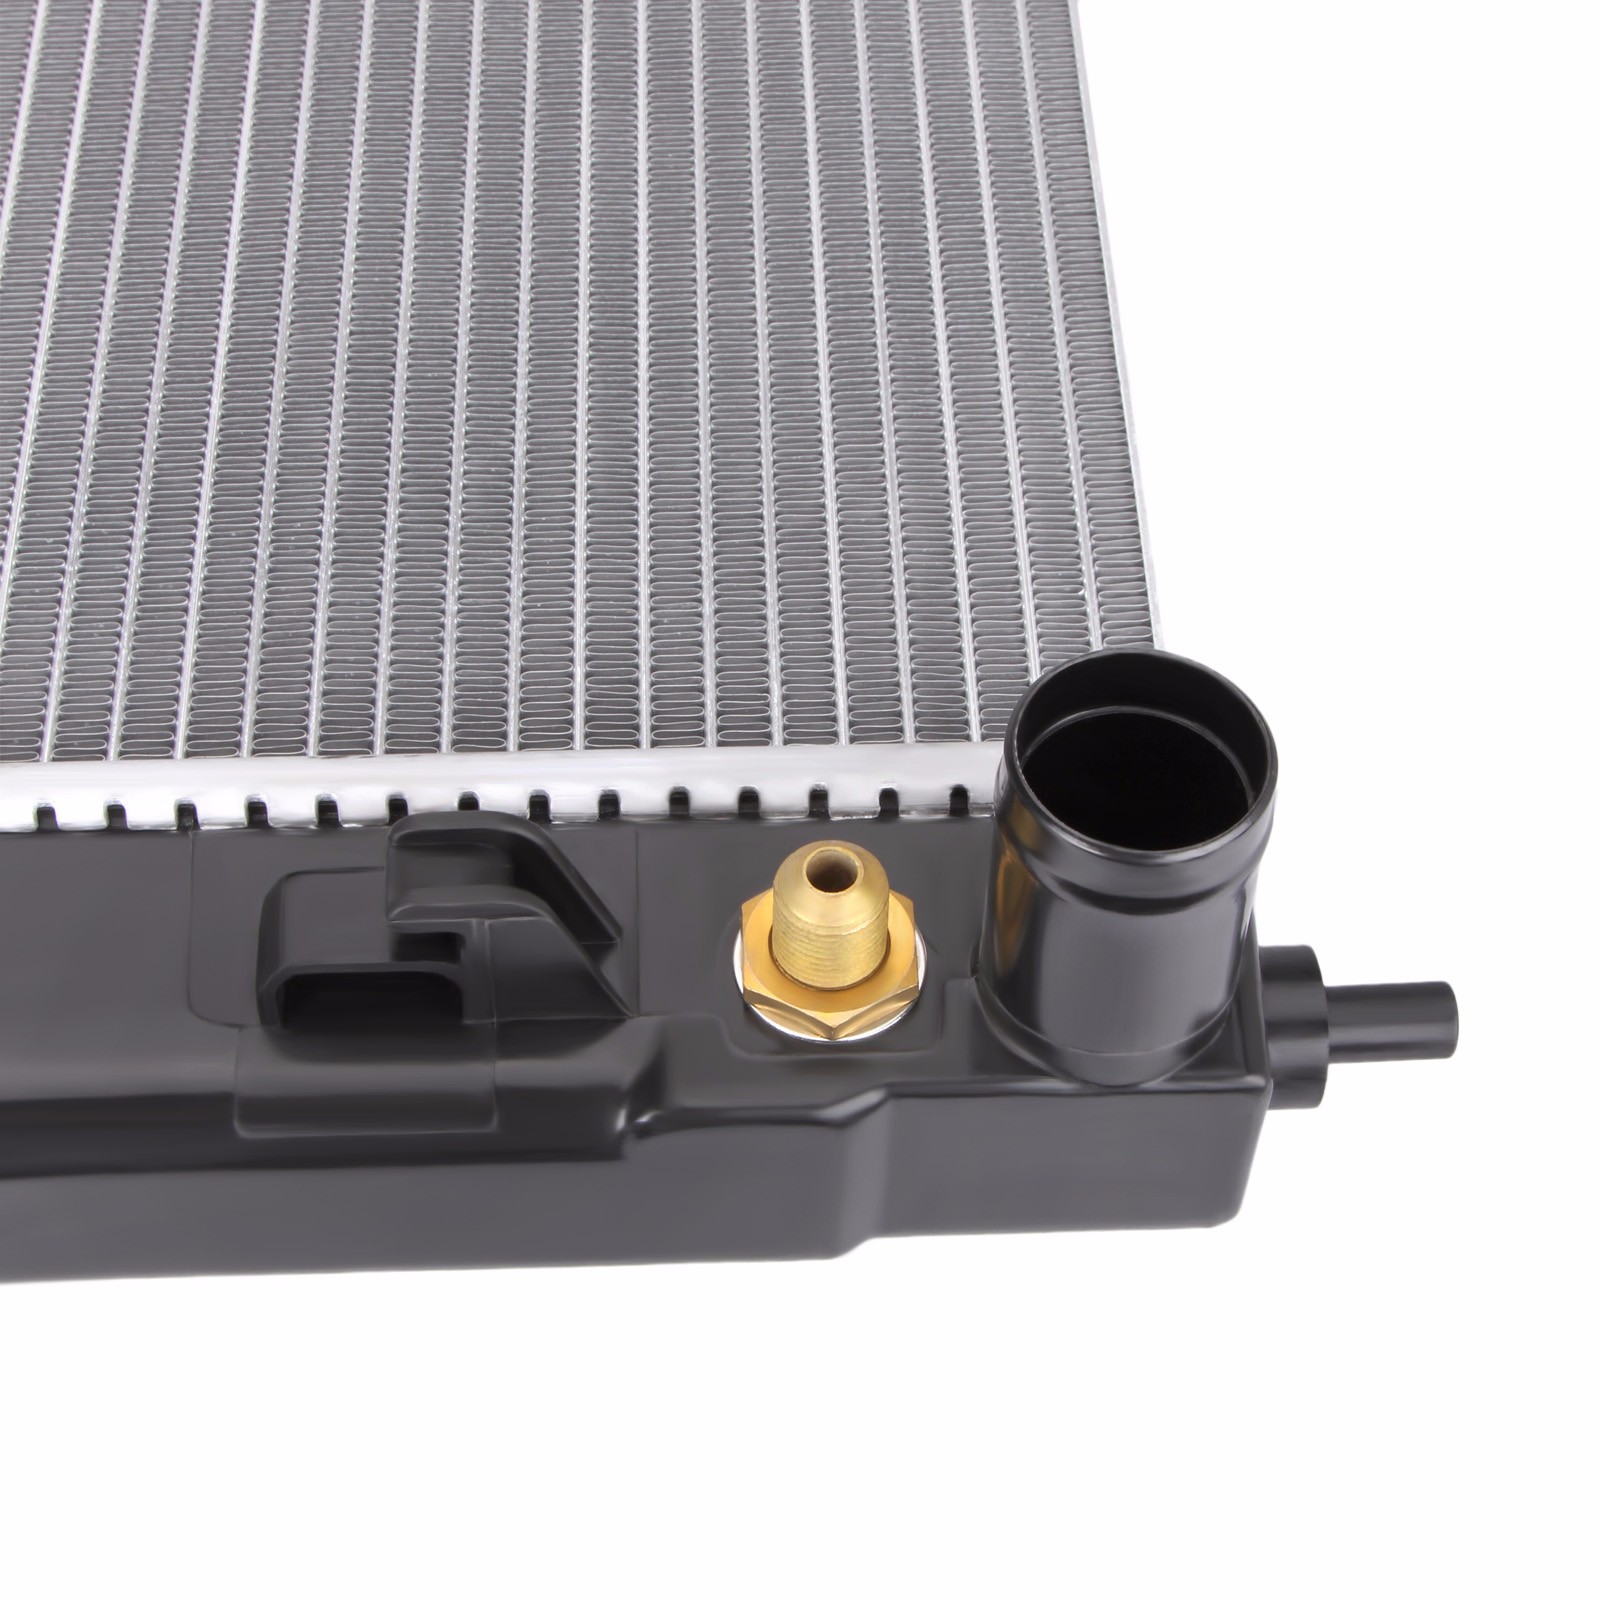 Dromedary-High Quality New 2688 Full Aluminum Radiator For Lexus Rx 330 33-202-v6-6